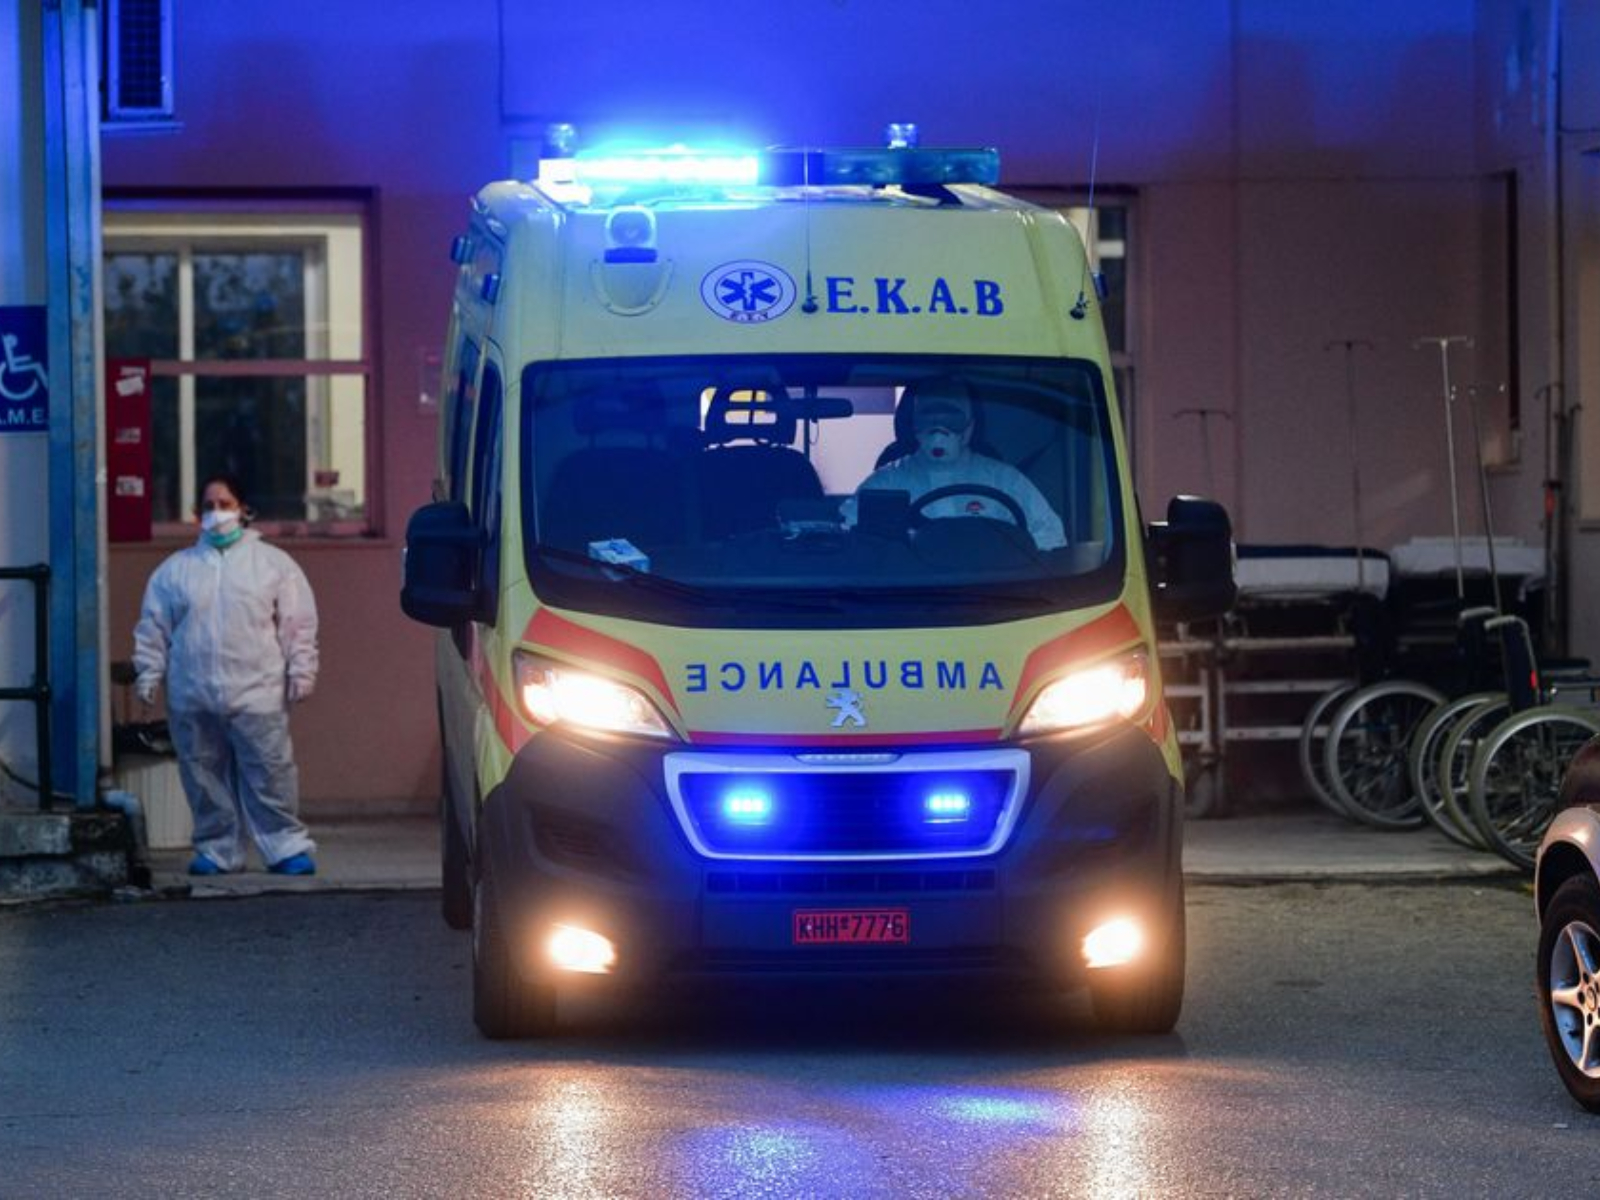 Θεσσαλονίκη: 5χρονο παιδί έπεσε στην τζαμαρία και σκοτώθηκε